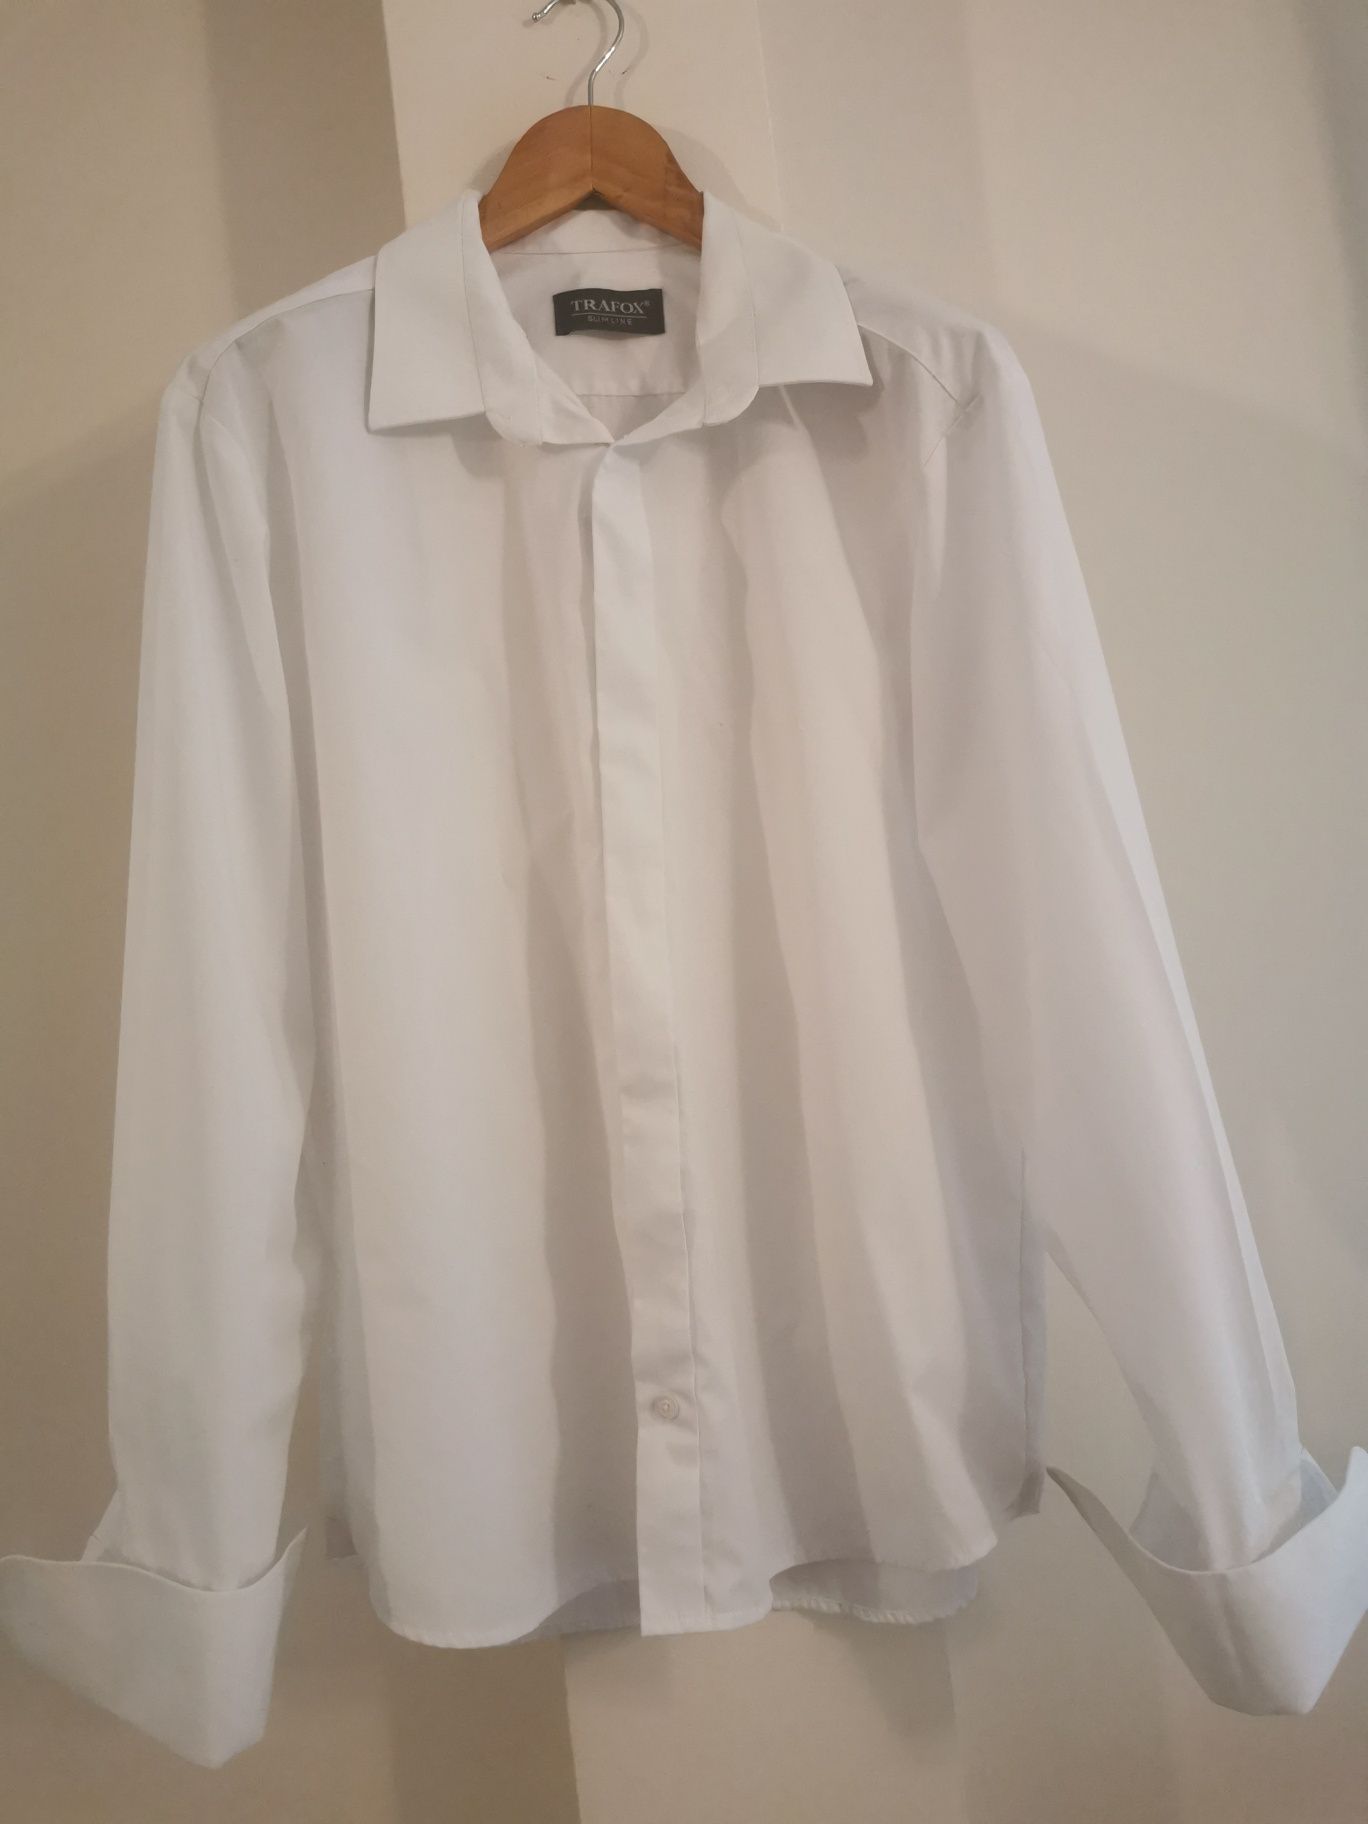 Biała koszula na spinki slim XL trafox